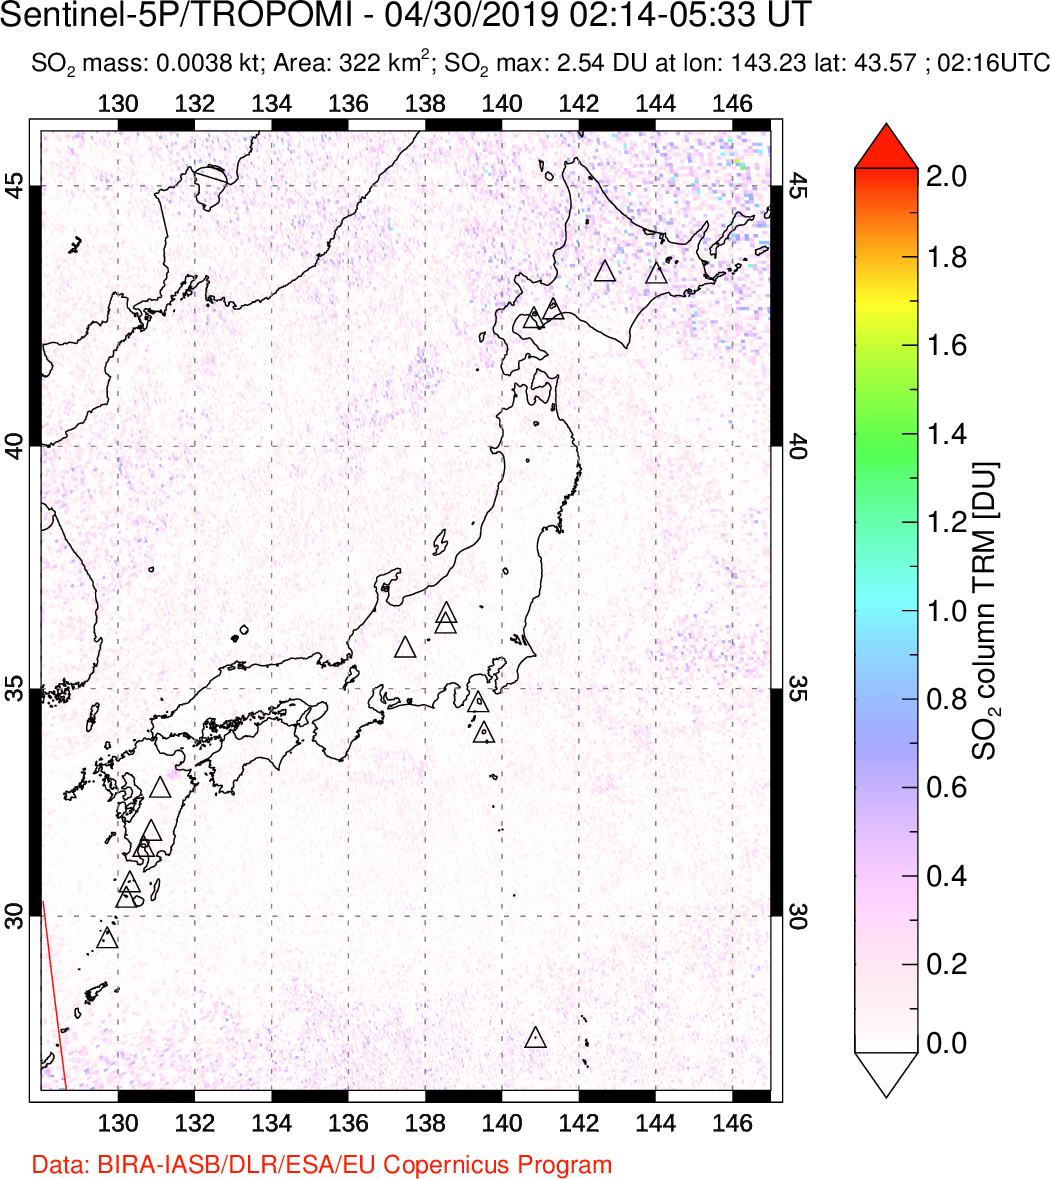 A sulfur dioxide image over Japan on Apr 30, 2019.